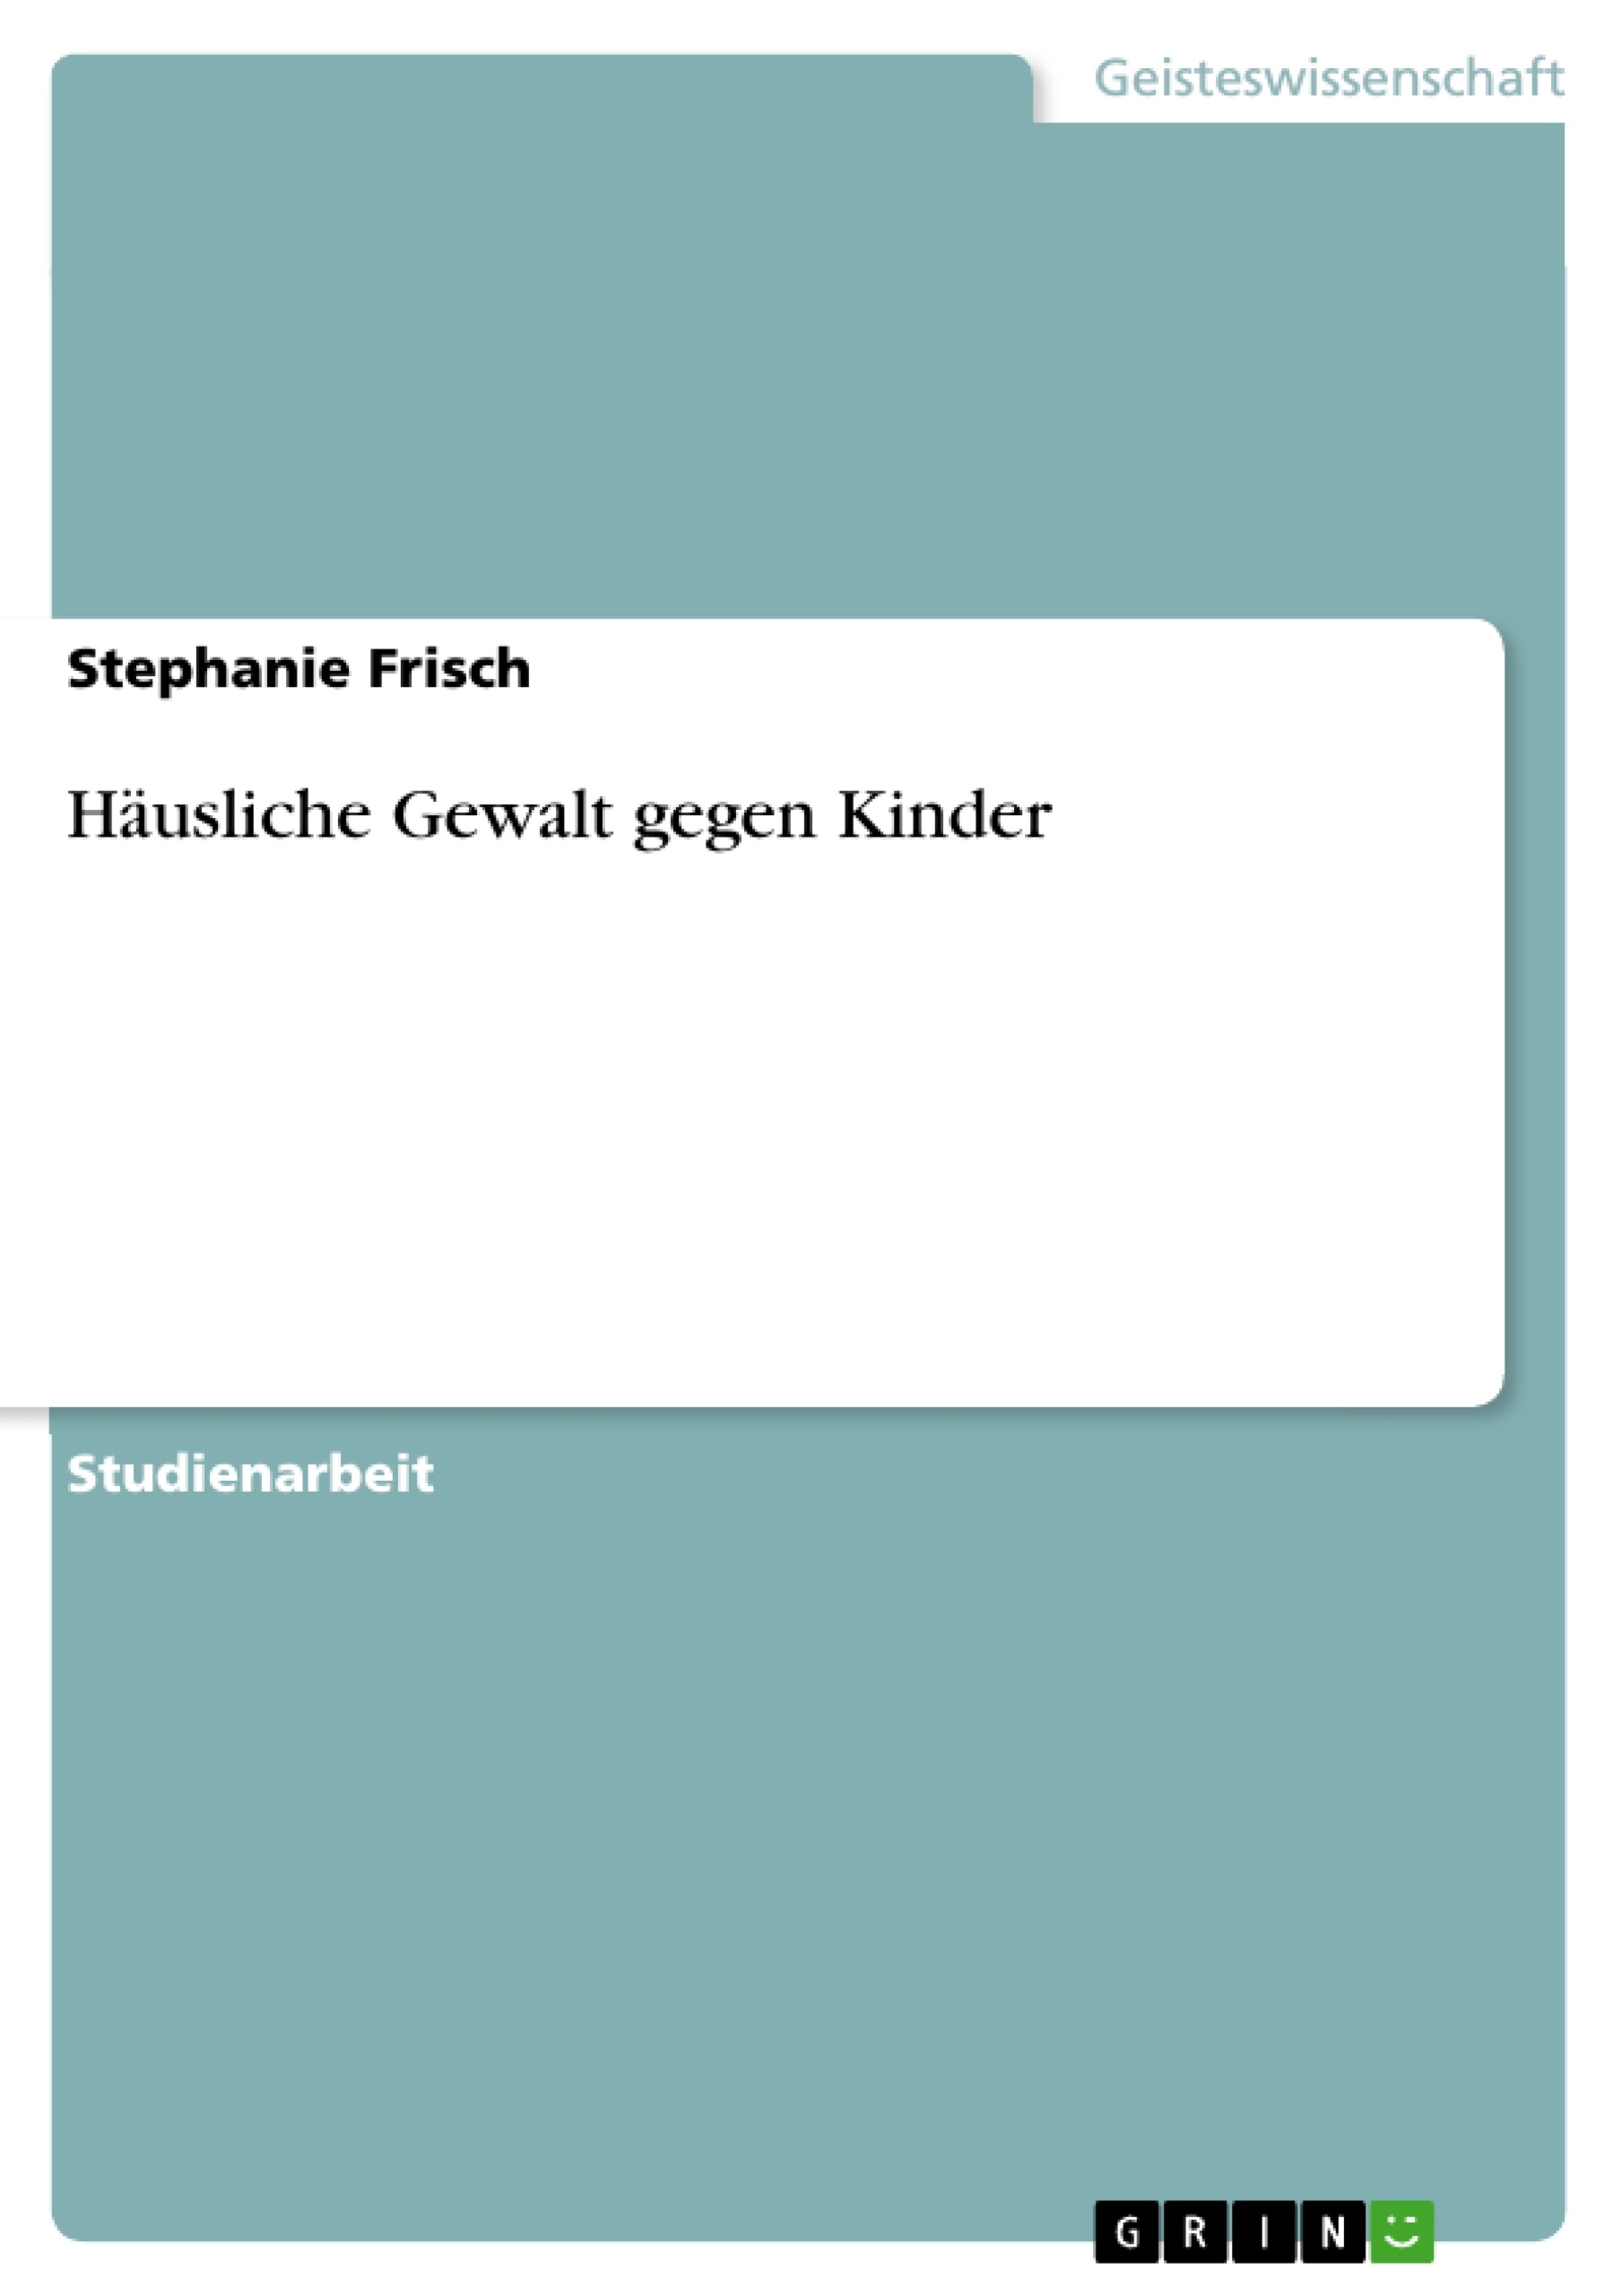 Hingabe statt Unterwerfung - Die Geschichte der Leonie von Alex Castle Hill  | ISBN 978-3-347-52106-3 | Buch online kaufen - Lehmanns.de